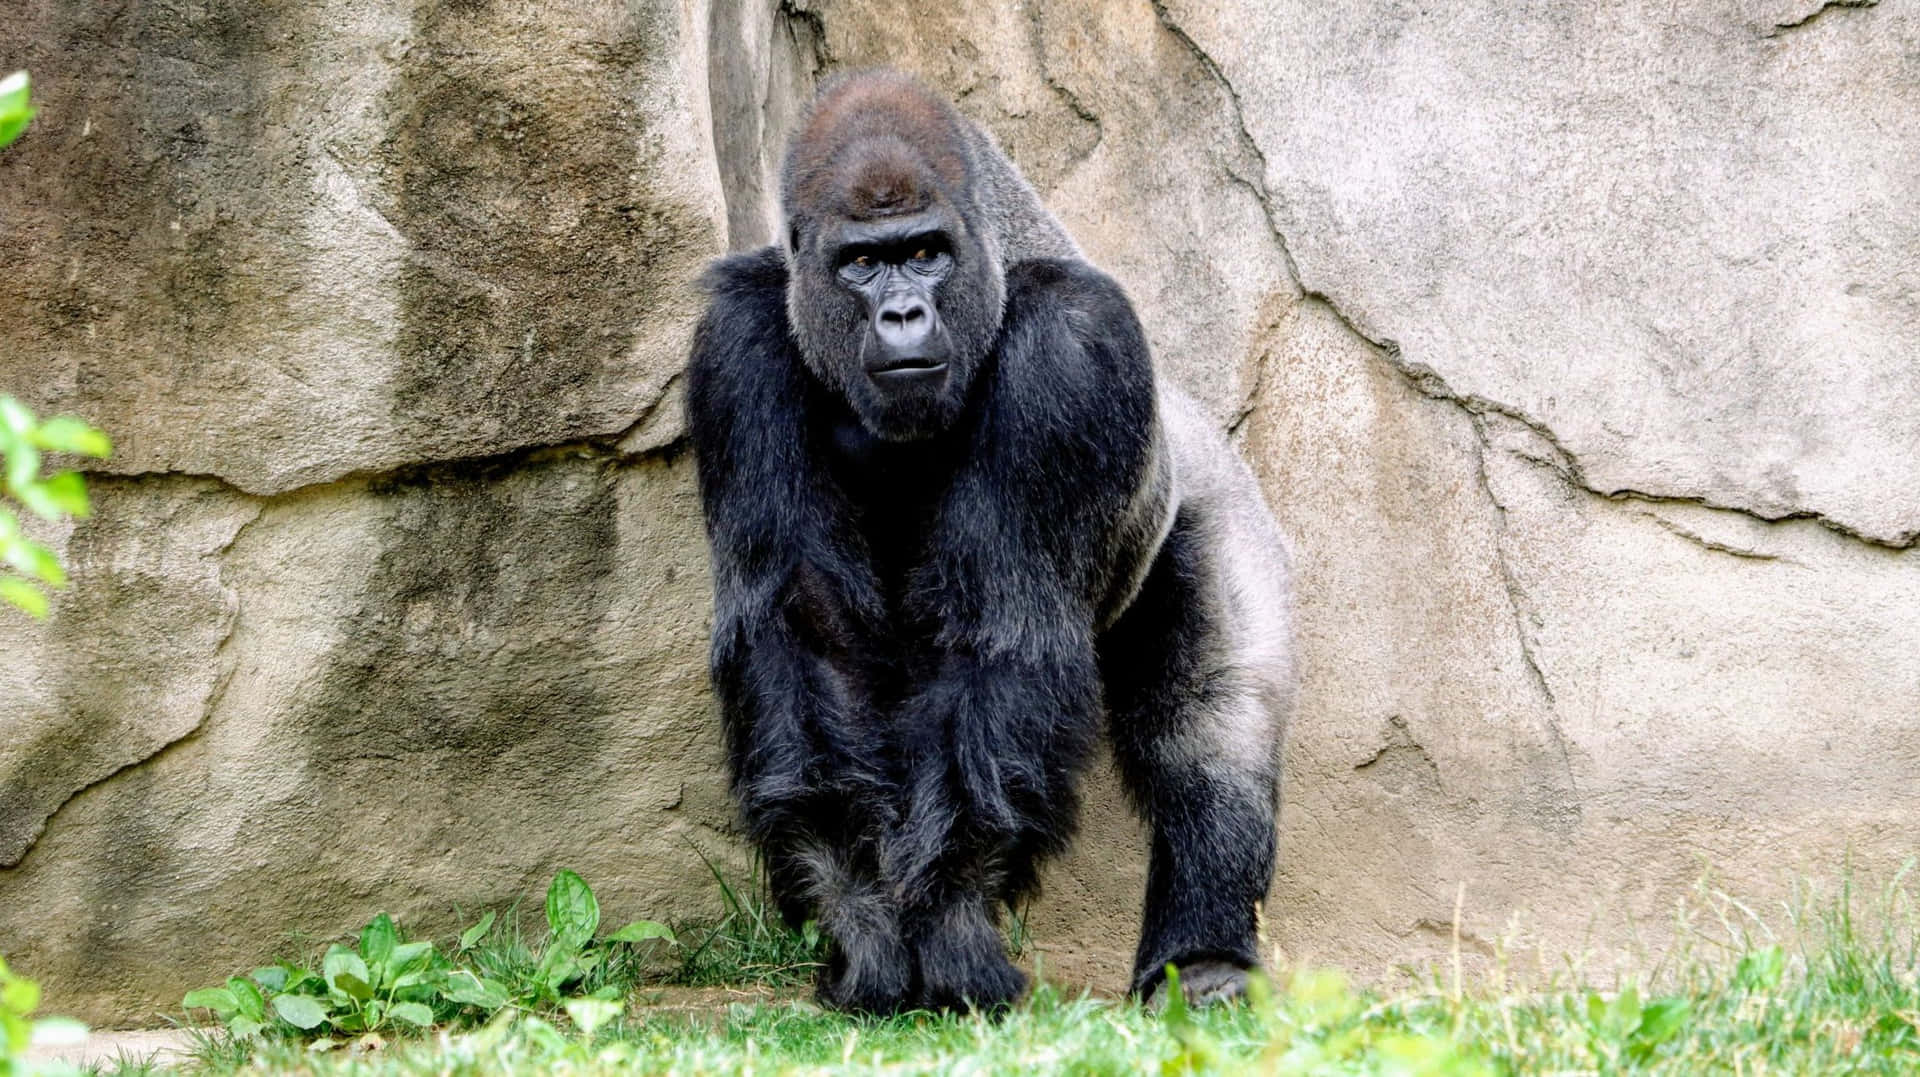 Unmaestoso Gorilla Silverback Che Si Riposa Nel Suo Habitat Naturale Nella Foresta Pluviale.